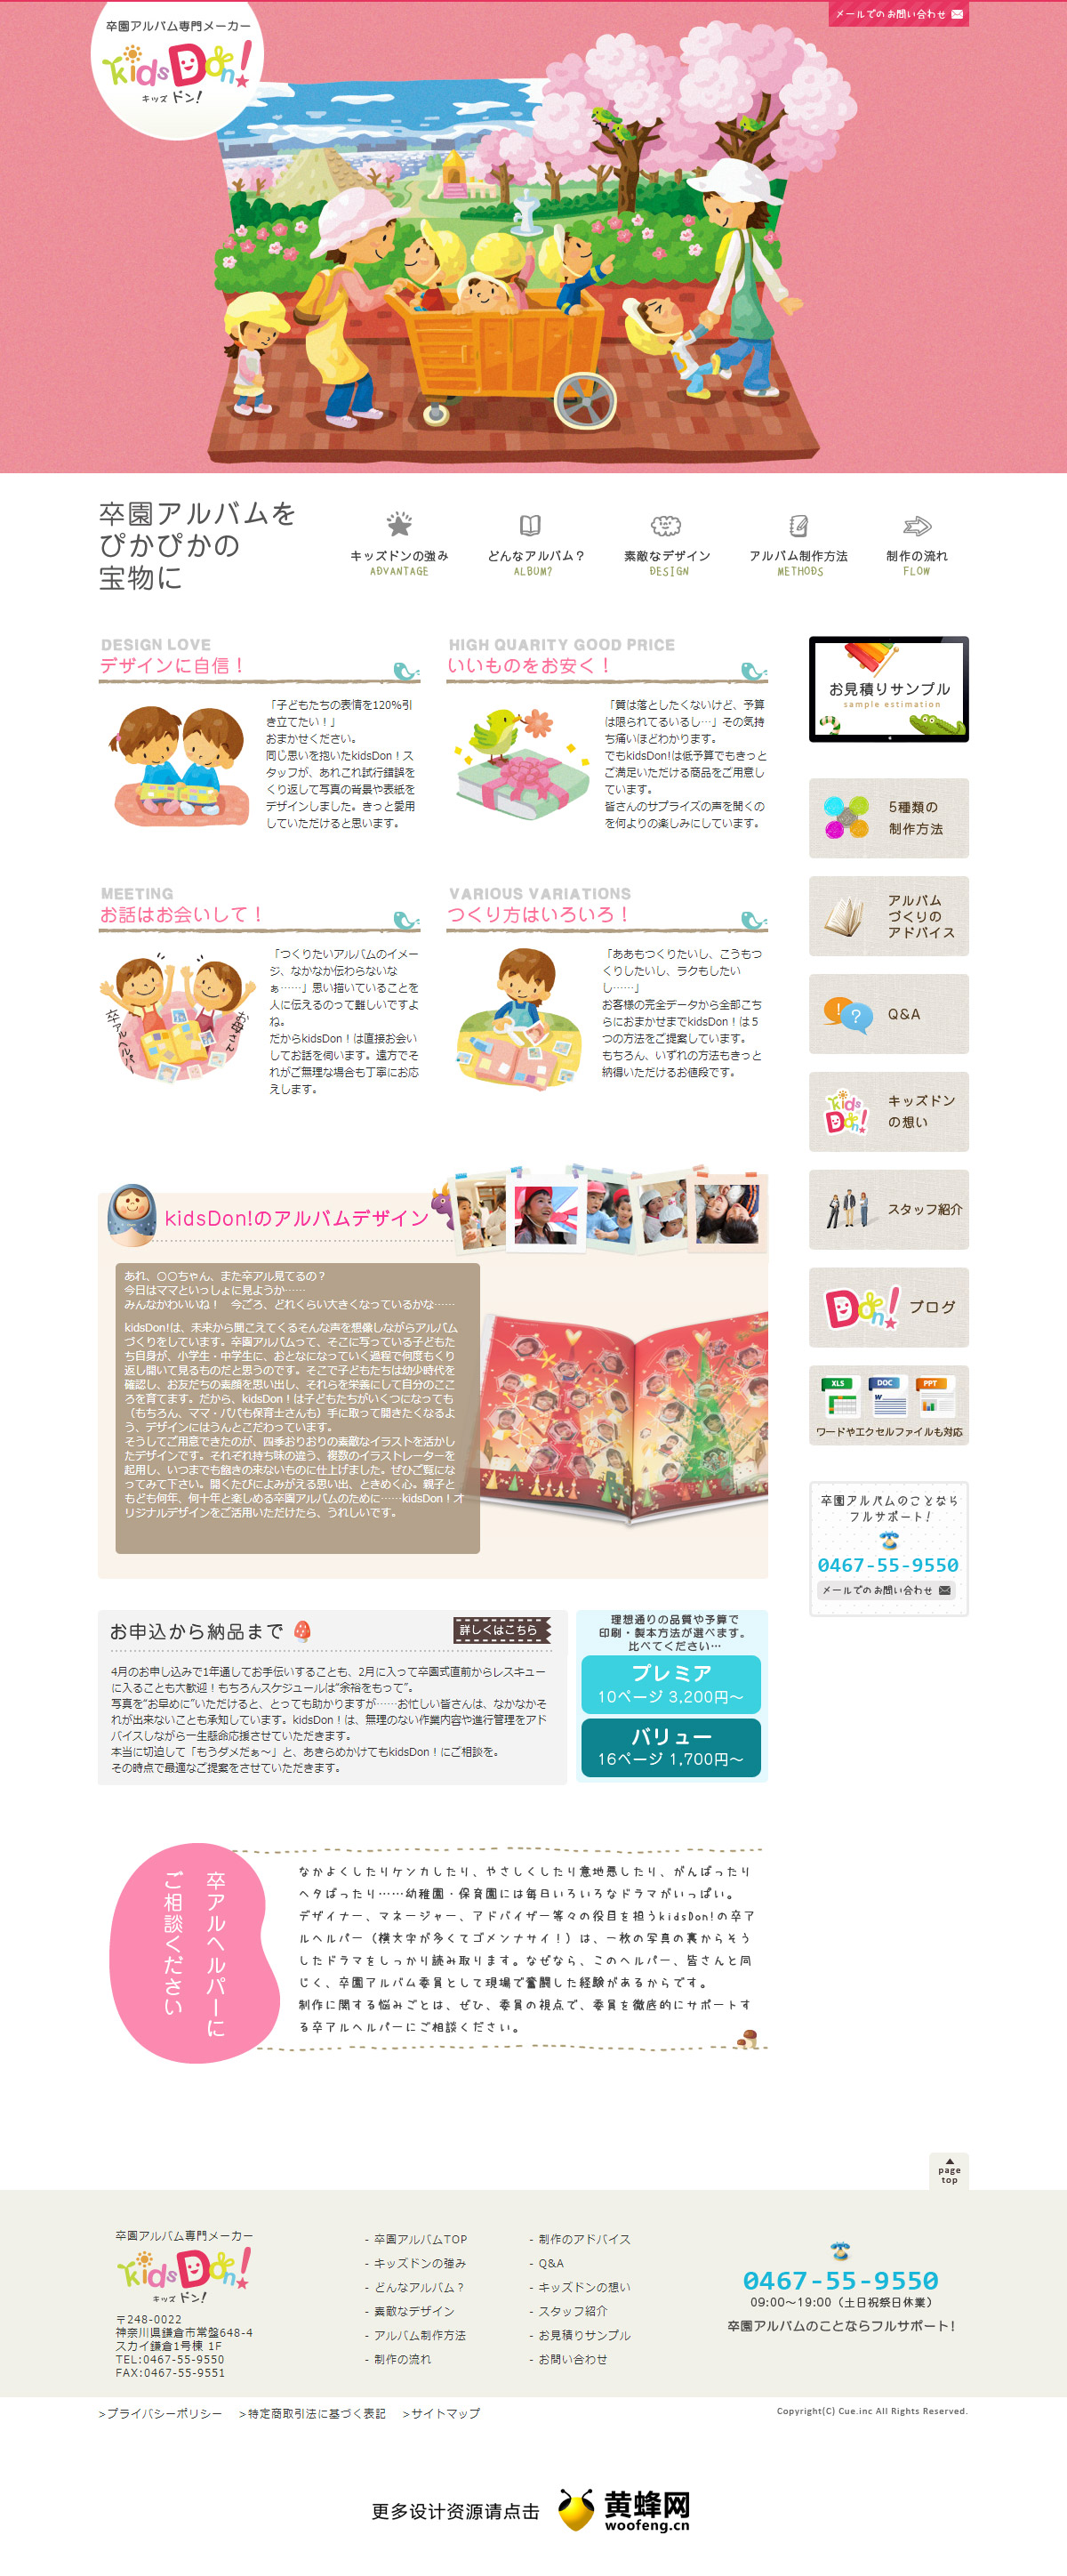 KidsDon毕业纪念册制造商，来源自黄蜂网https://woofeng.cn/web/